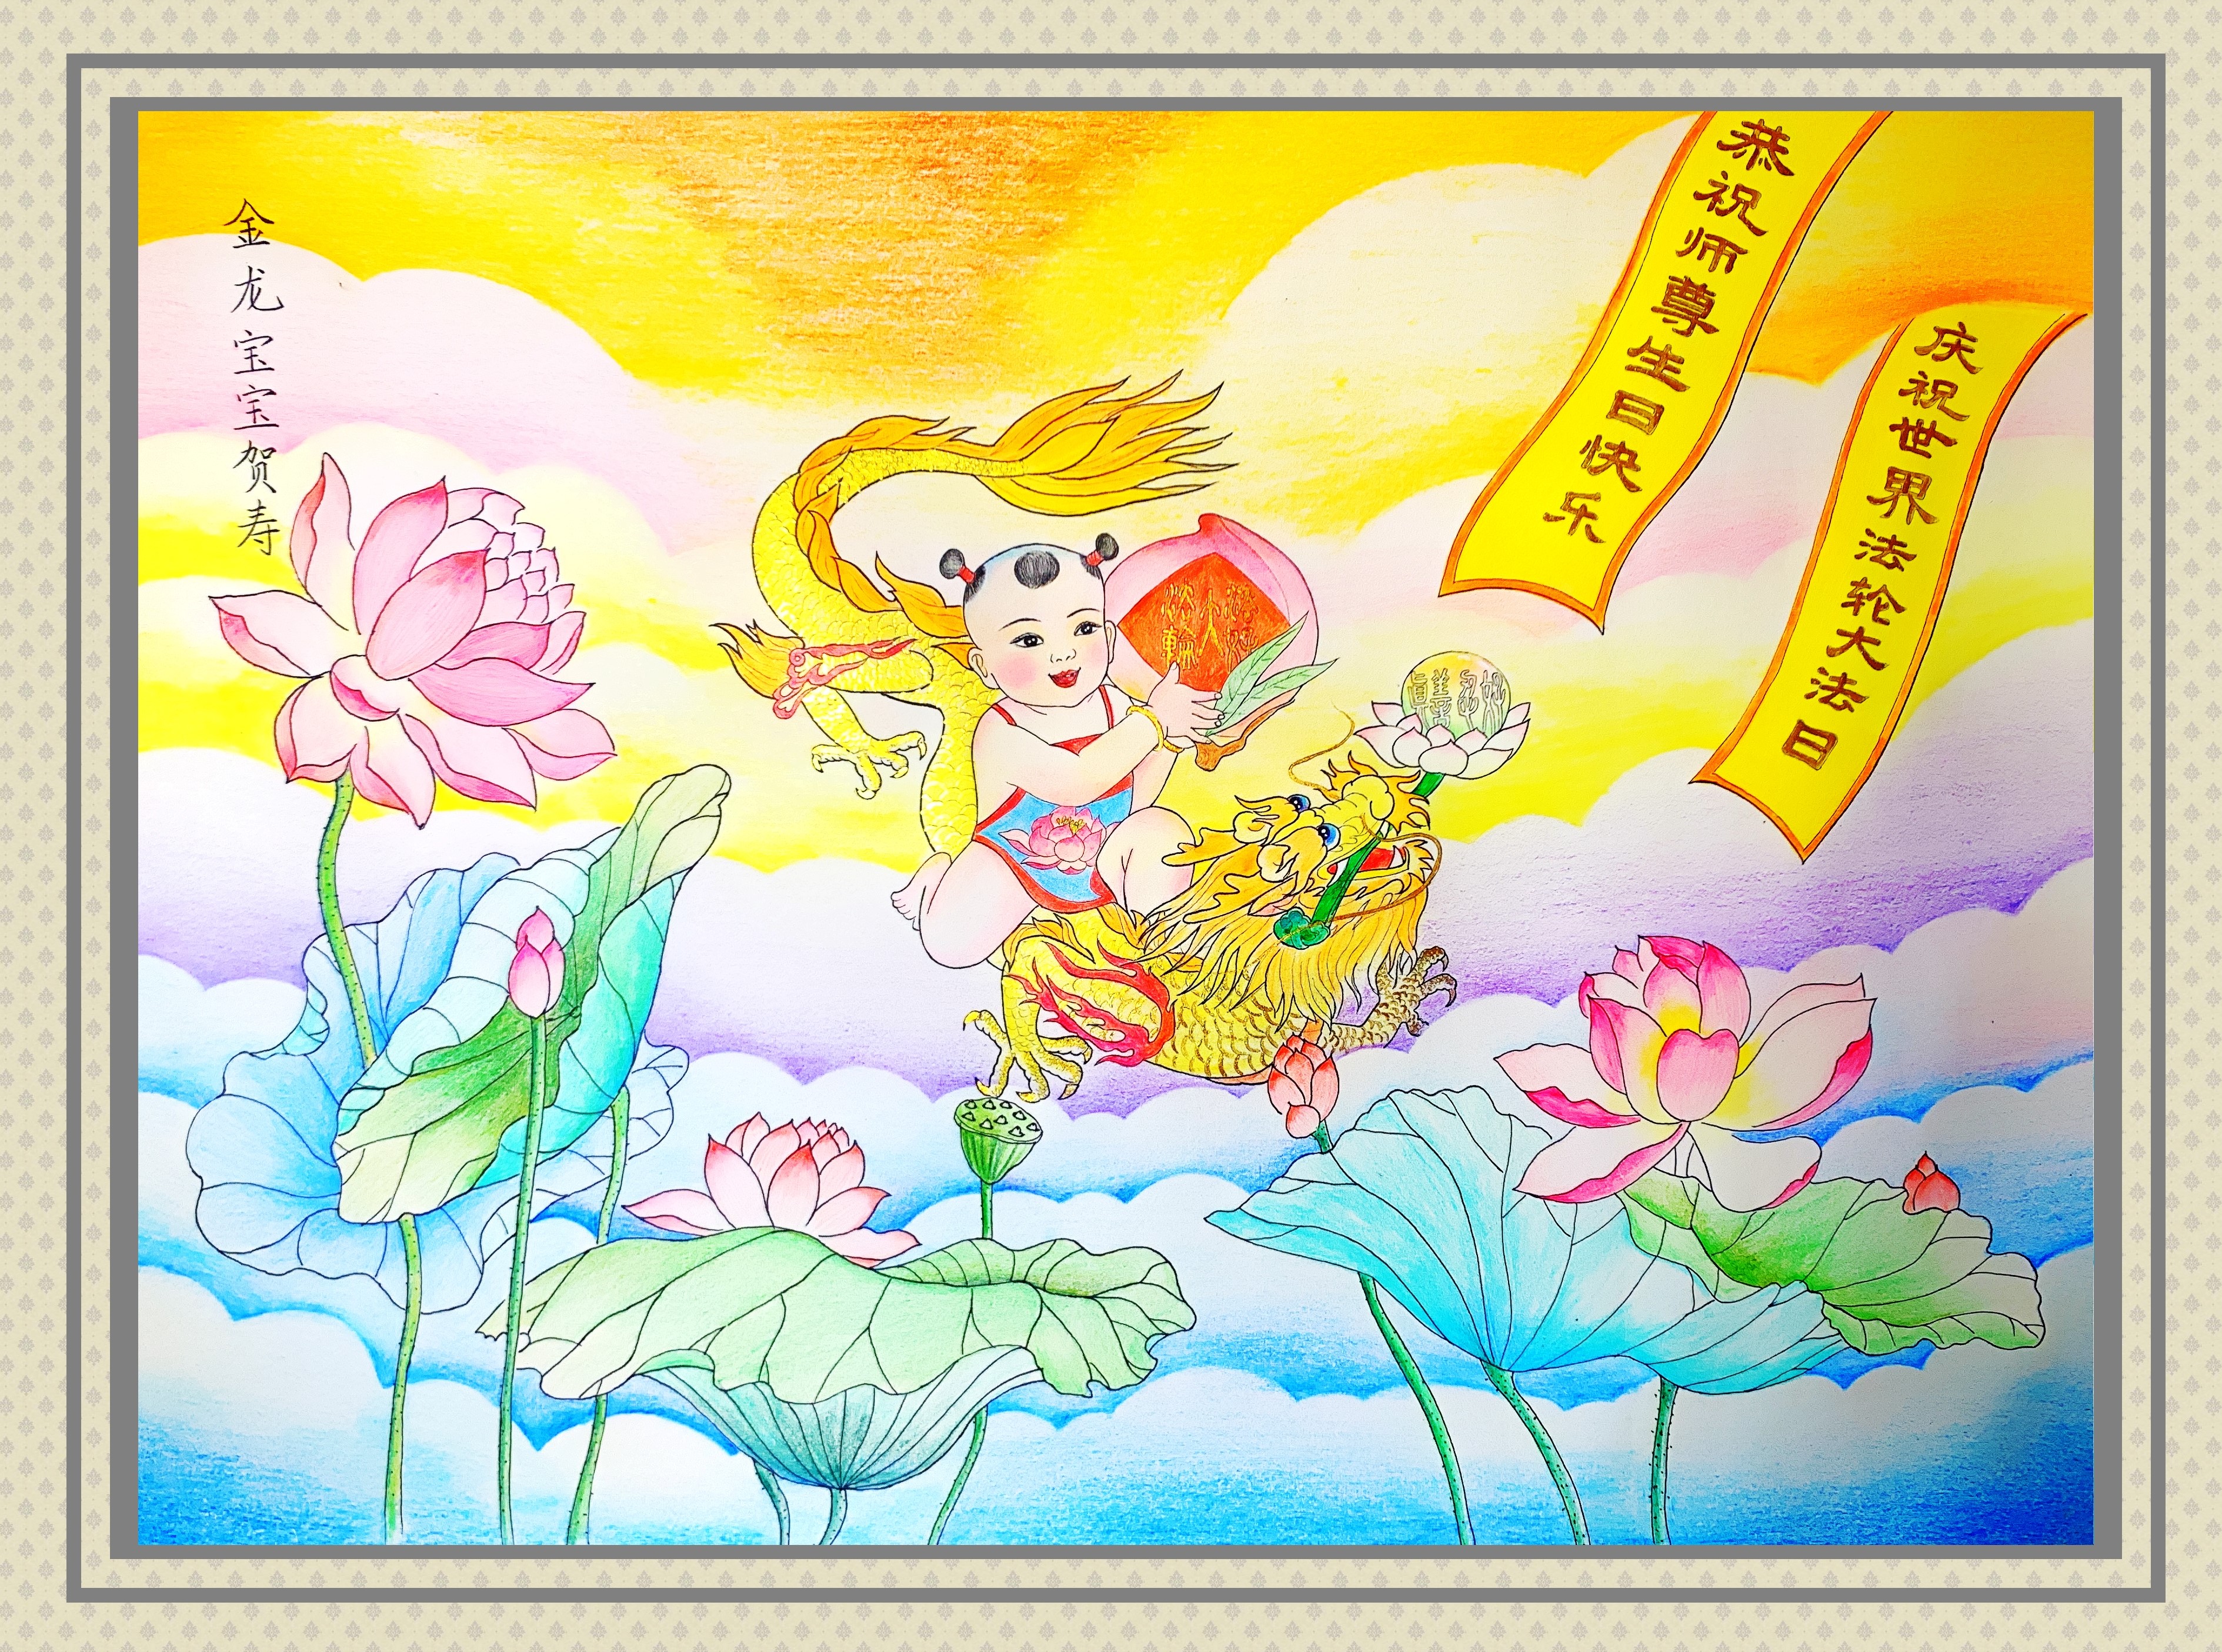 Image for article [Célébrer la Journée mondiale du Falun Dafa] Dessin : Un petit enfant sur un dragon doré souhaite un bon anniversaire au Maître